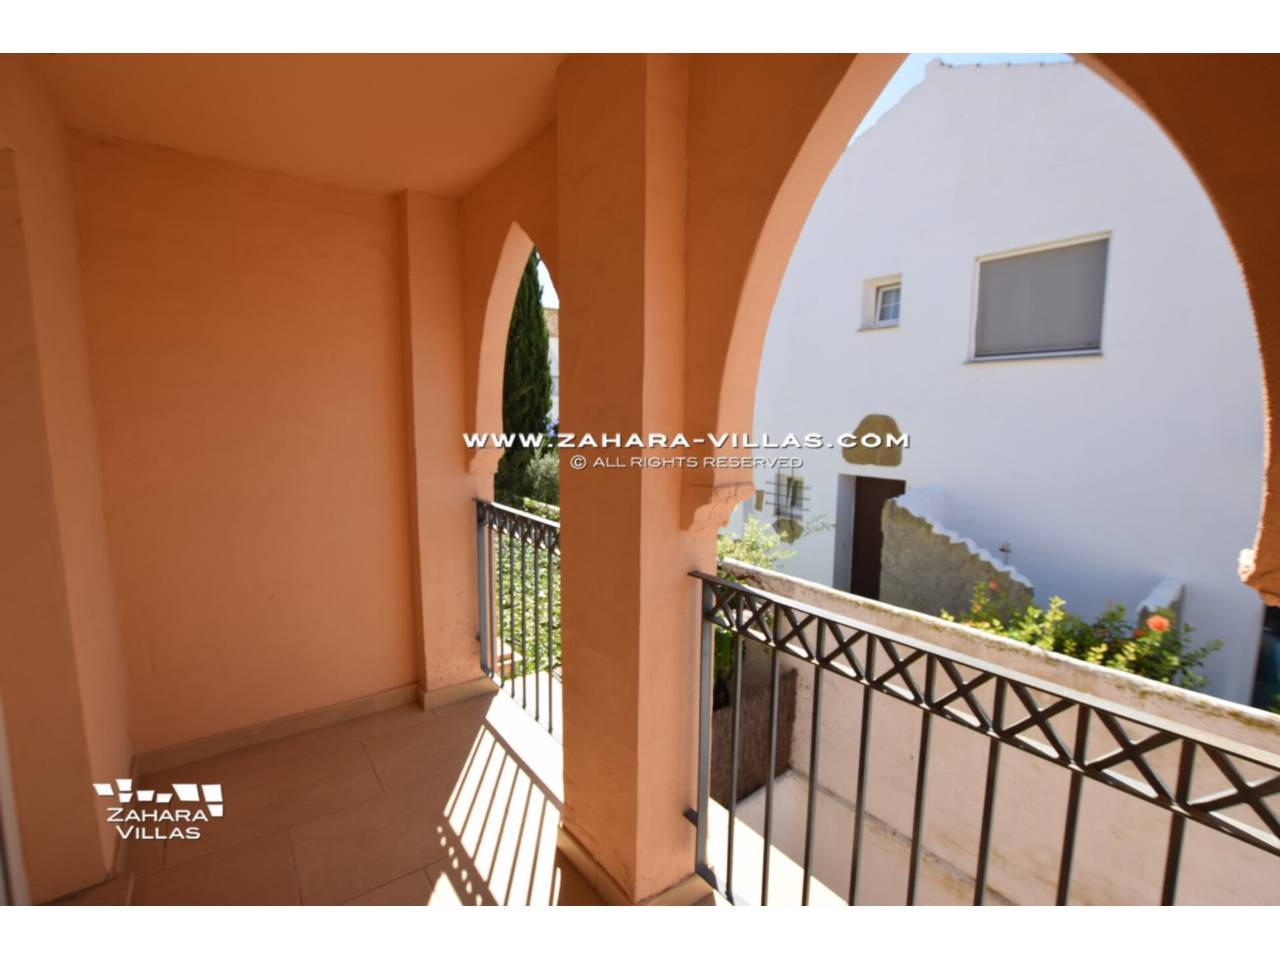 Imagen 8 de Casa pareada en venta, zona La Tahona,  Zahara de los Atunes